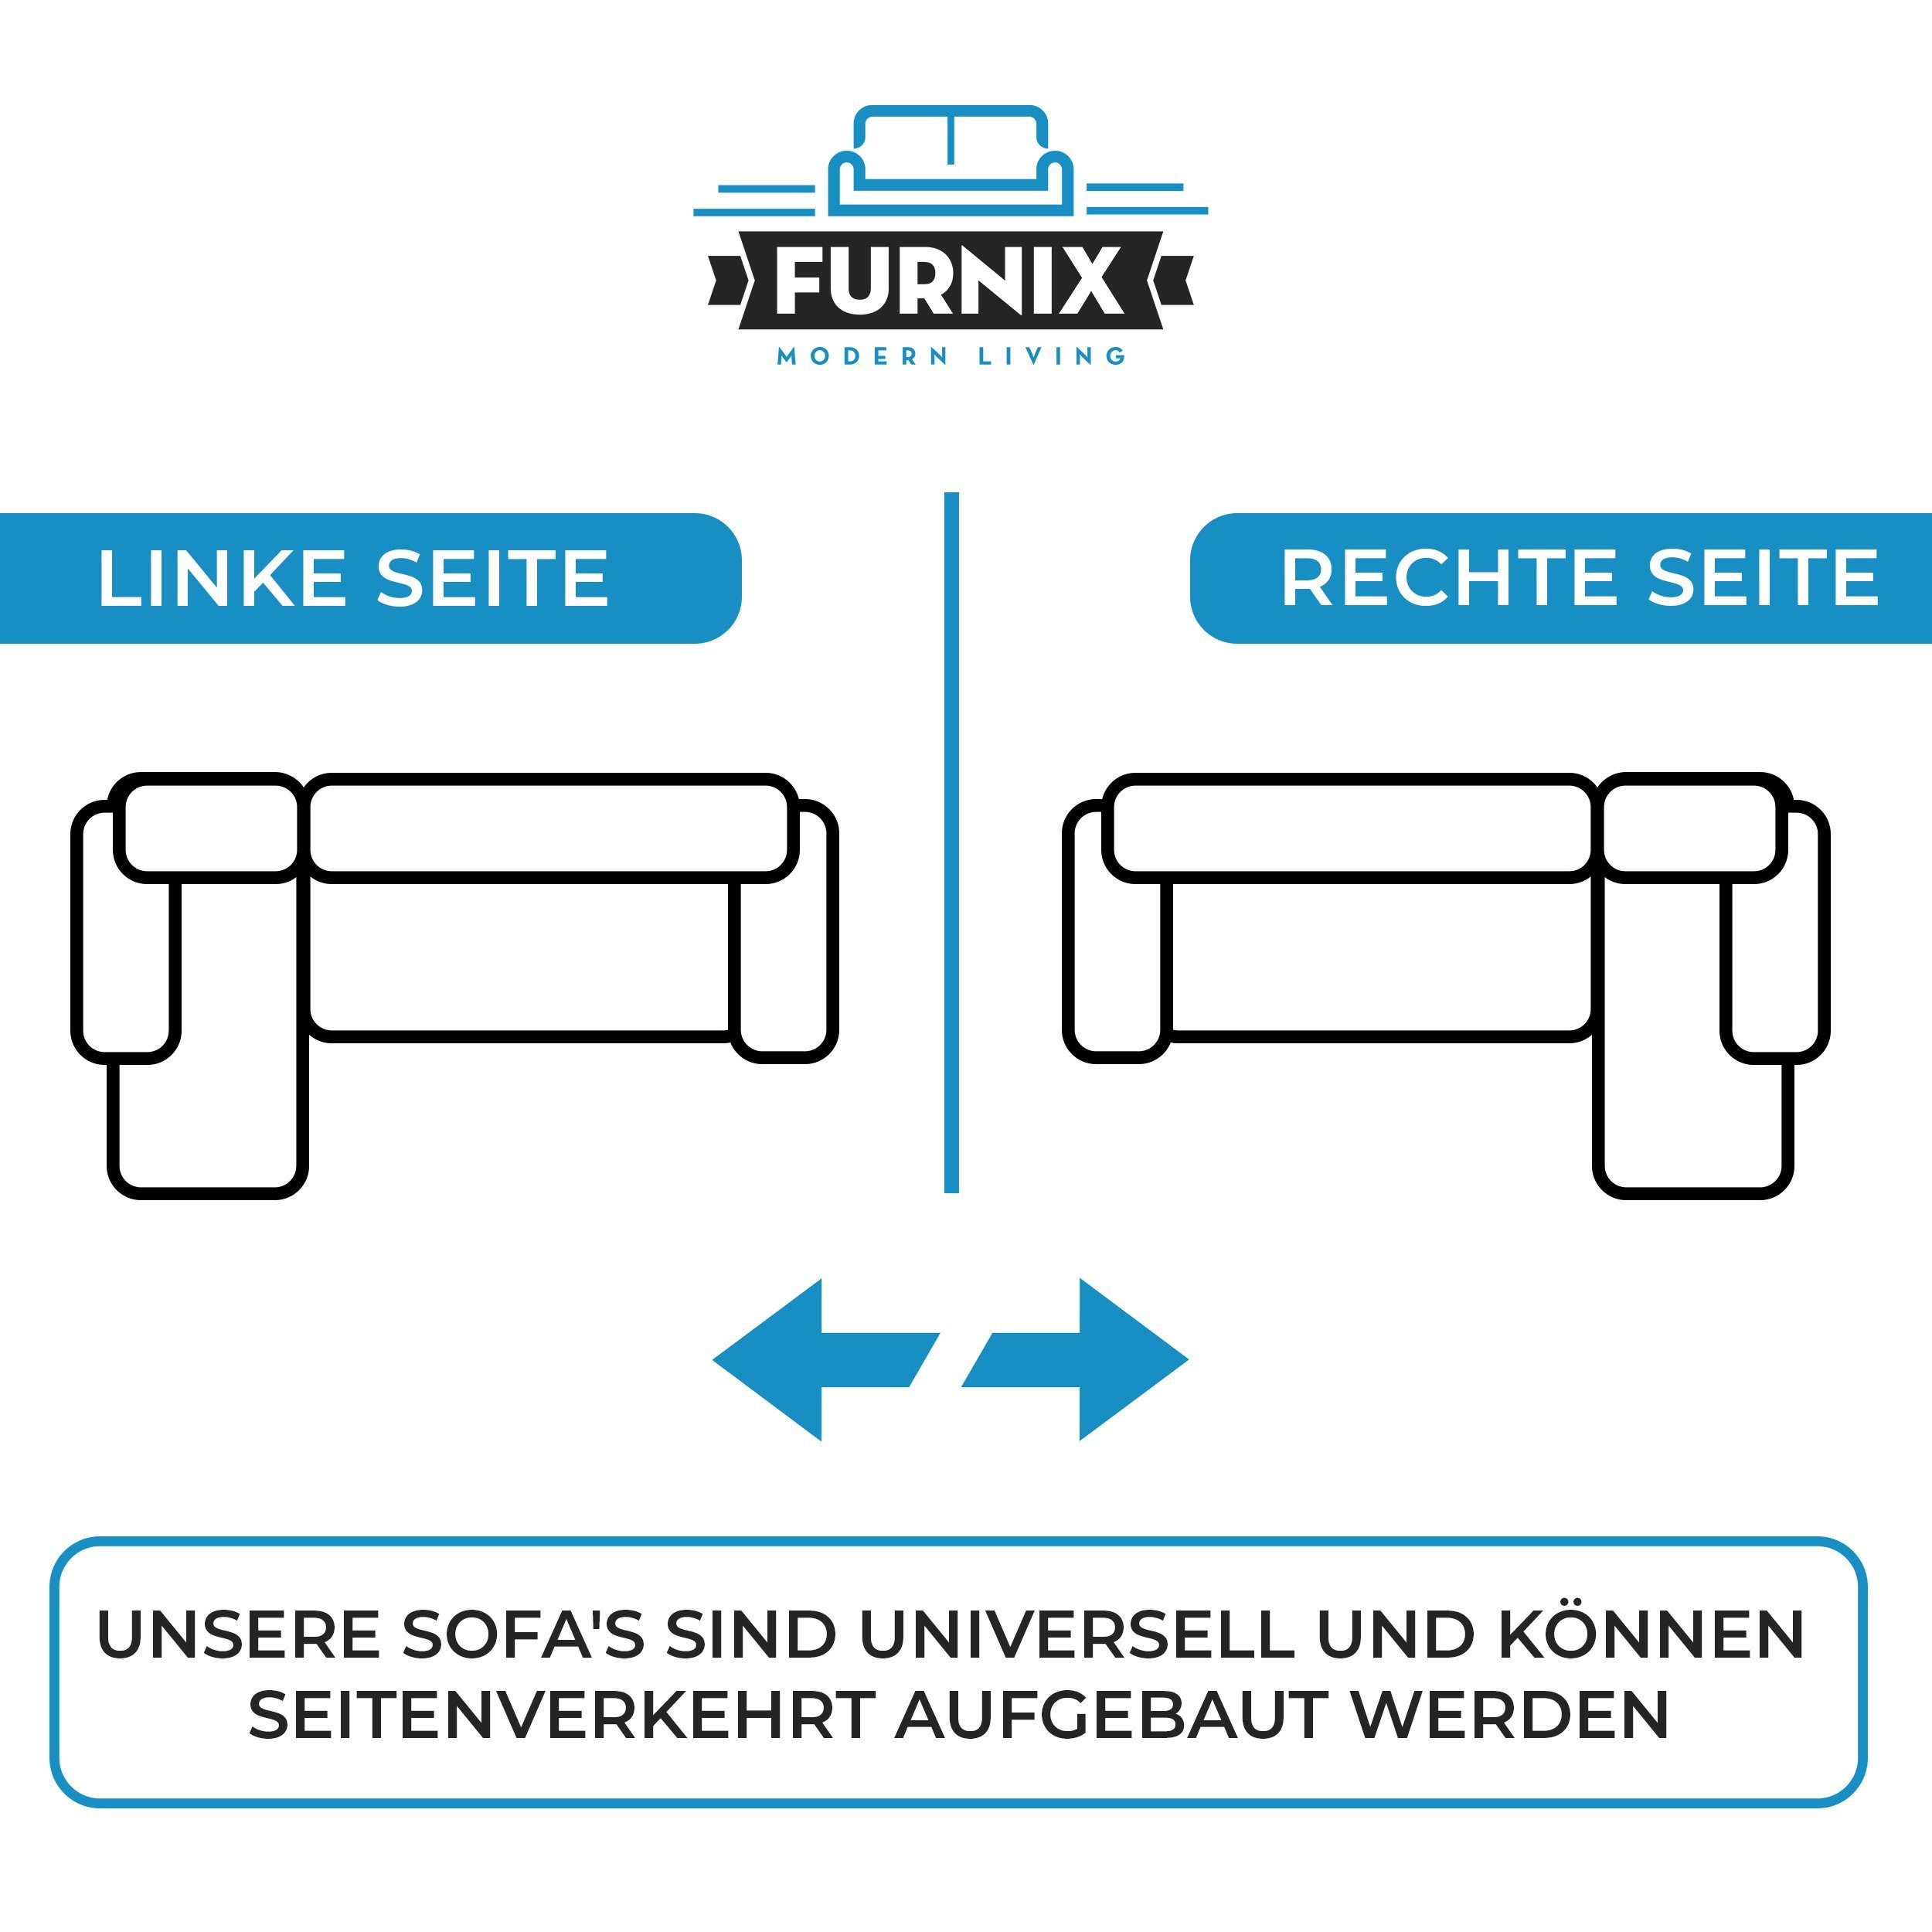 Schlaffunktion Furnix in B353 MH37 Europe und U-Form-Sofa Made Grün Ecksofa H80 Bettkasten, x ASVIL cm, x mit Farbauswahl, T180